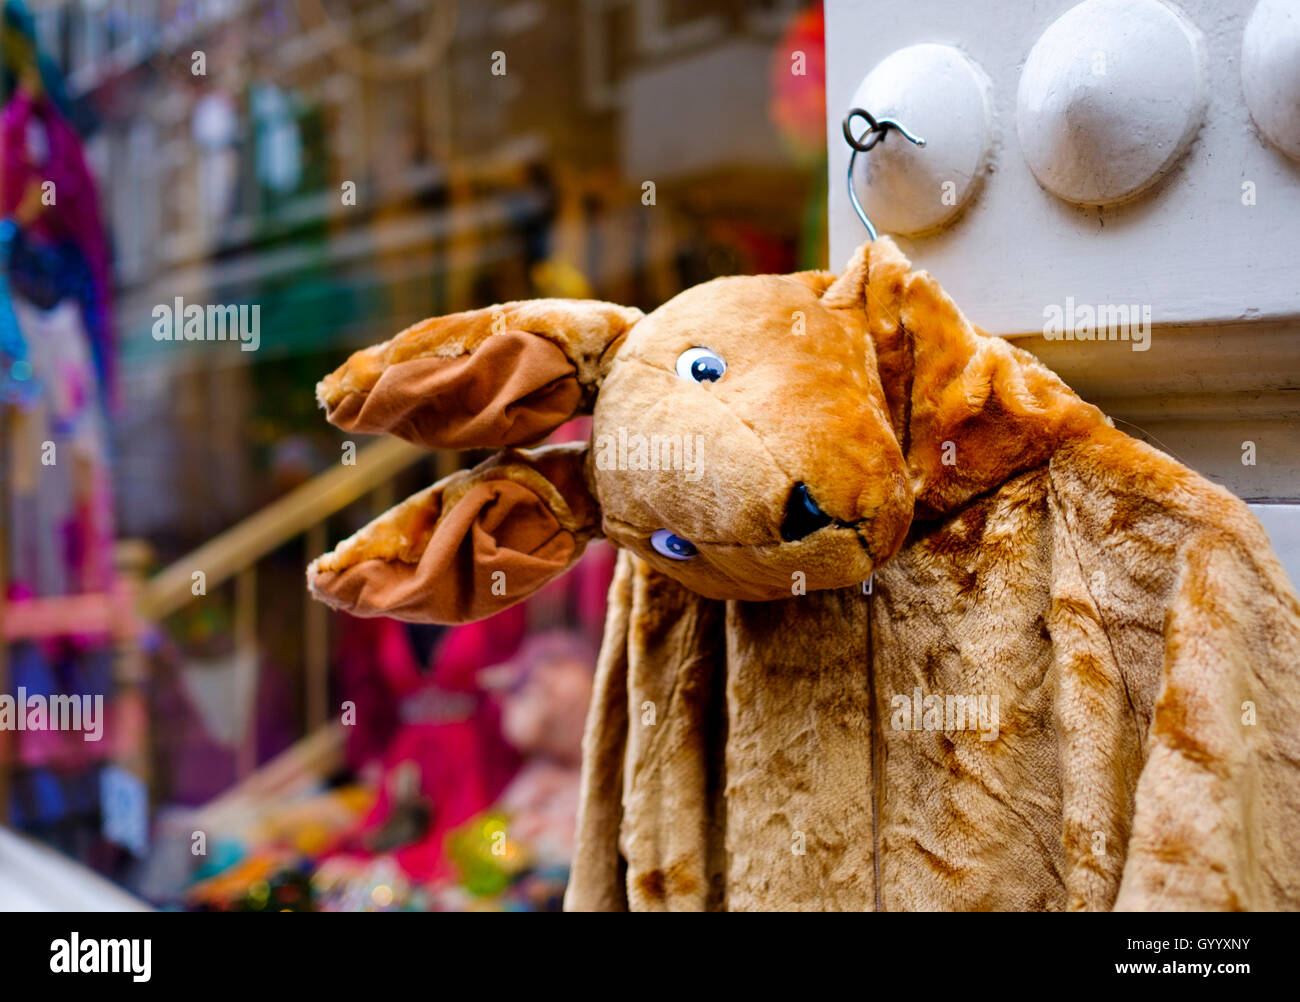 Kangaroo Jacke aus Plüsch, vor Schaufenstern, Amsterdam, Niederlande Stockfoto